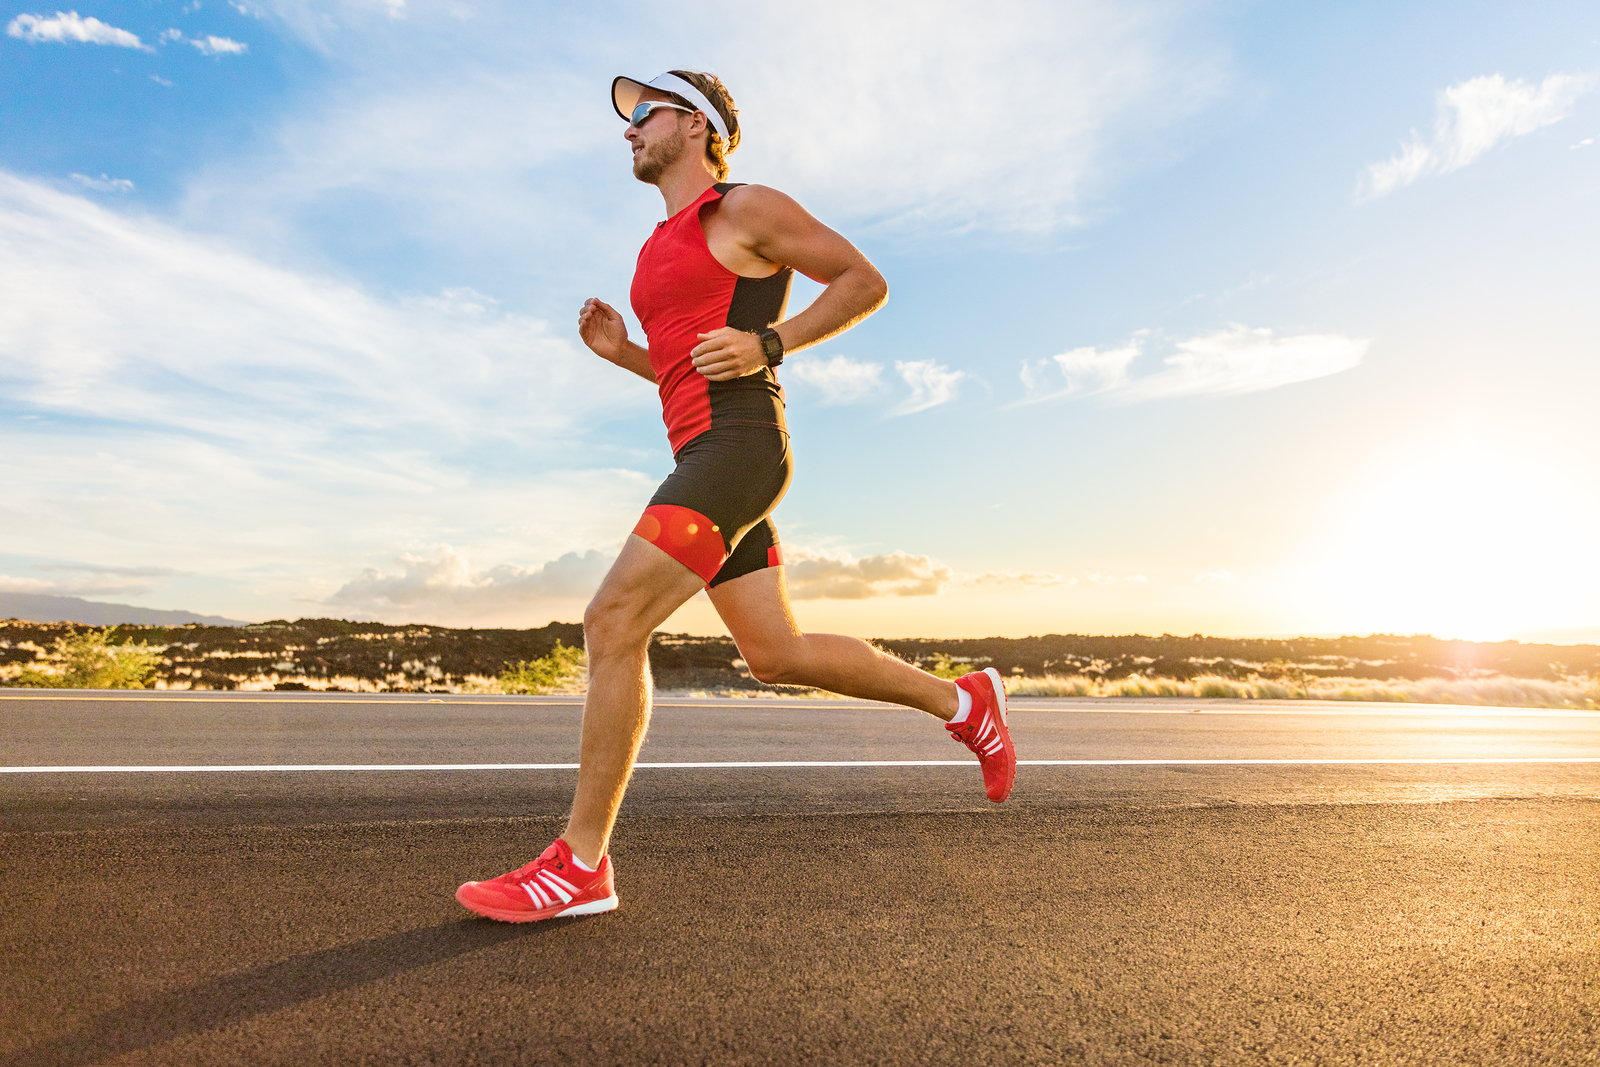 Laufen Sie Ihren ersten Marathon